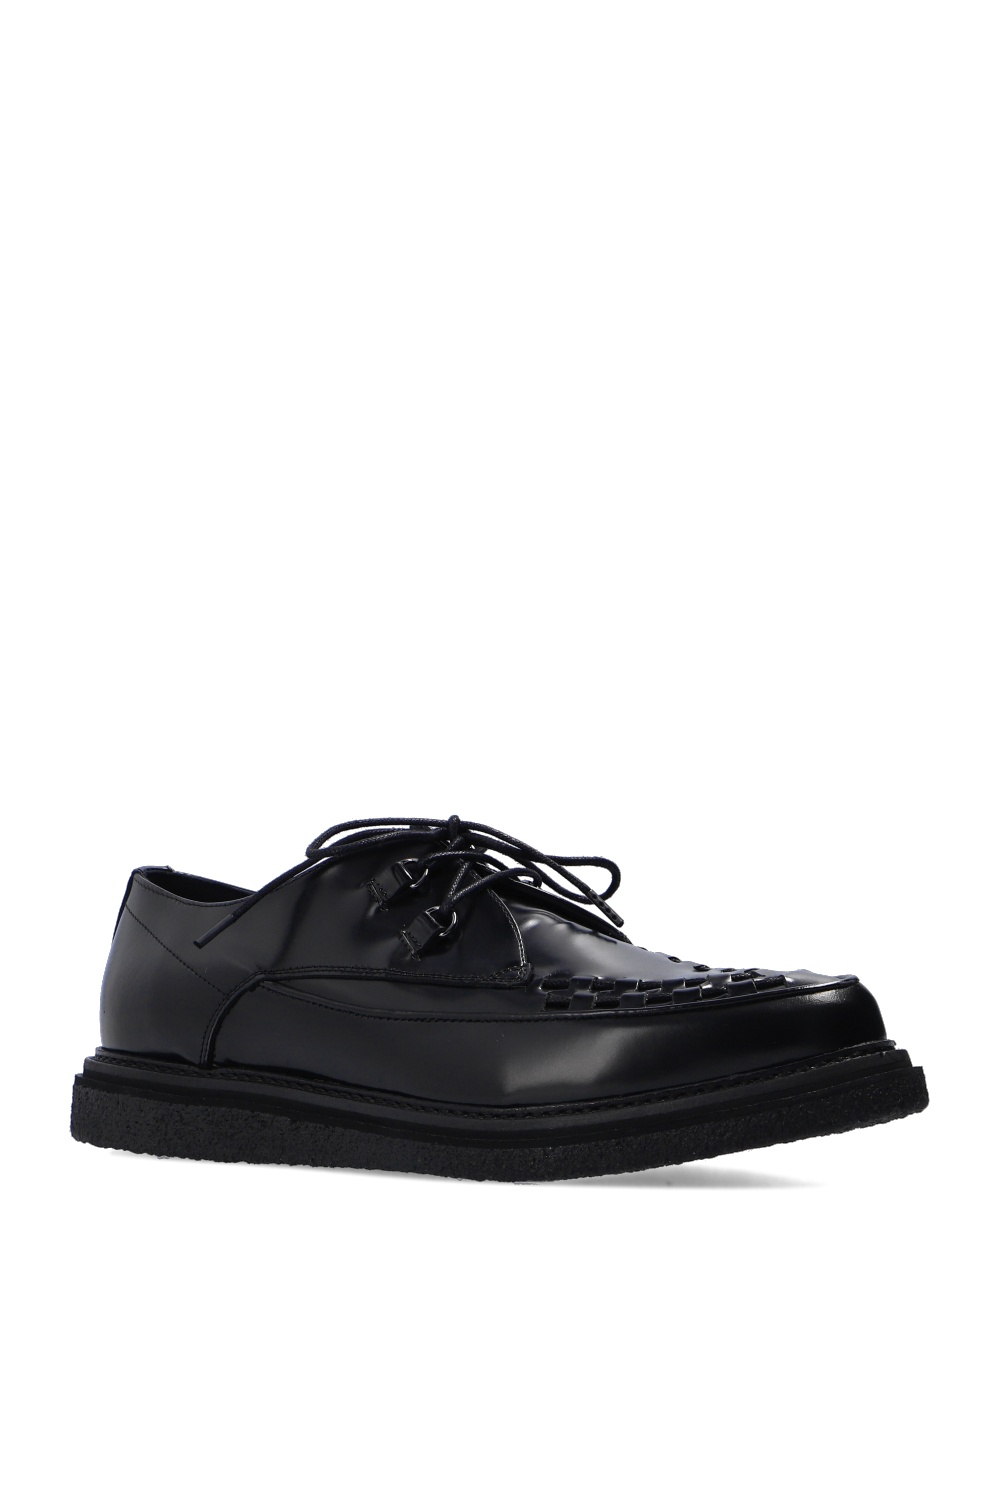 AllSaints ‘Dalton’ shoes